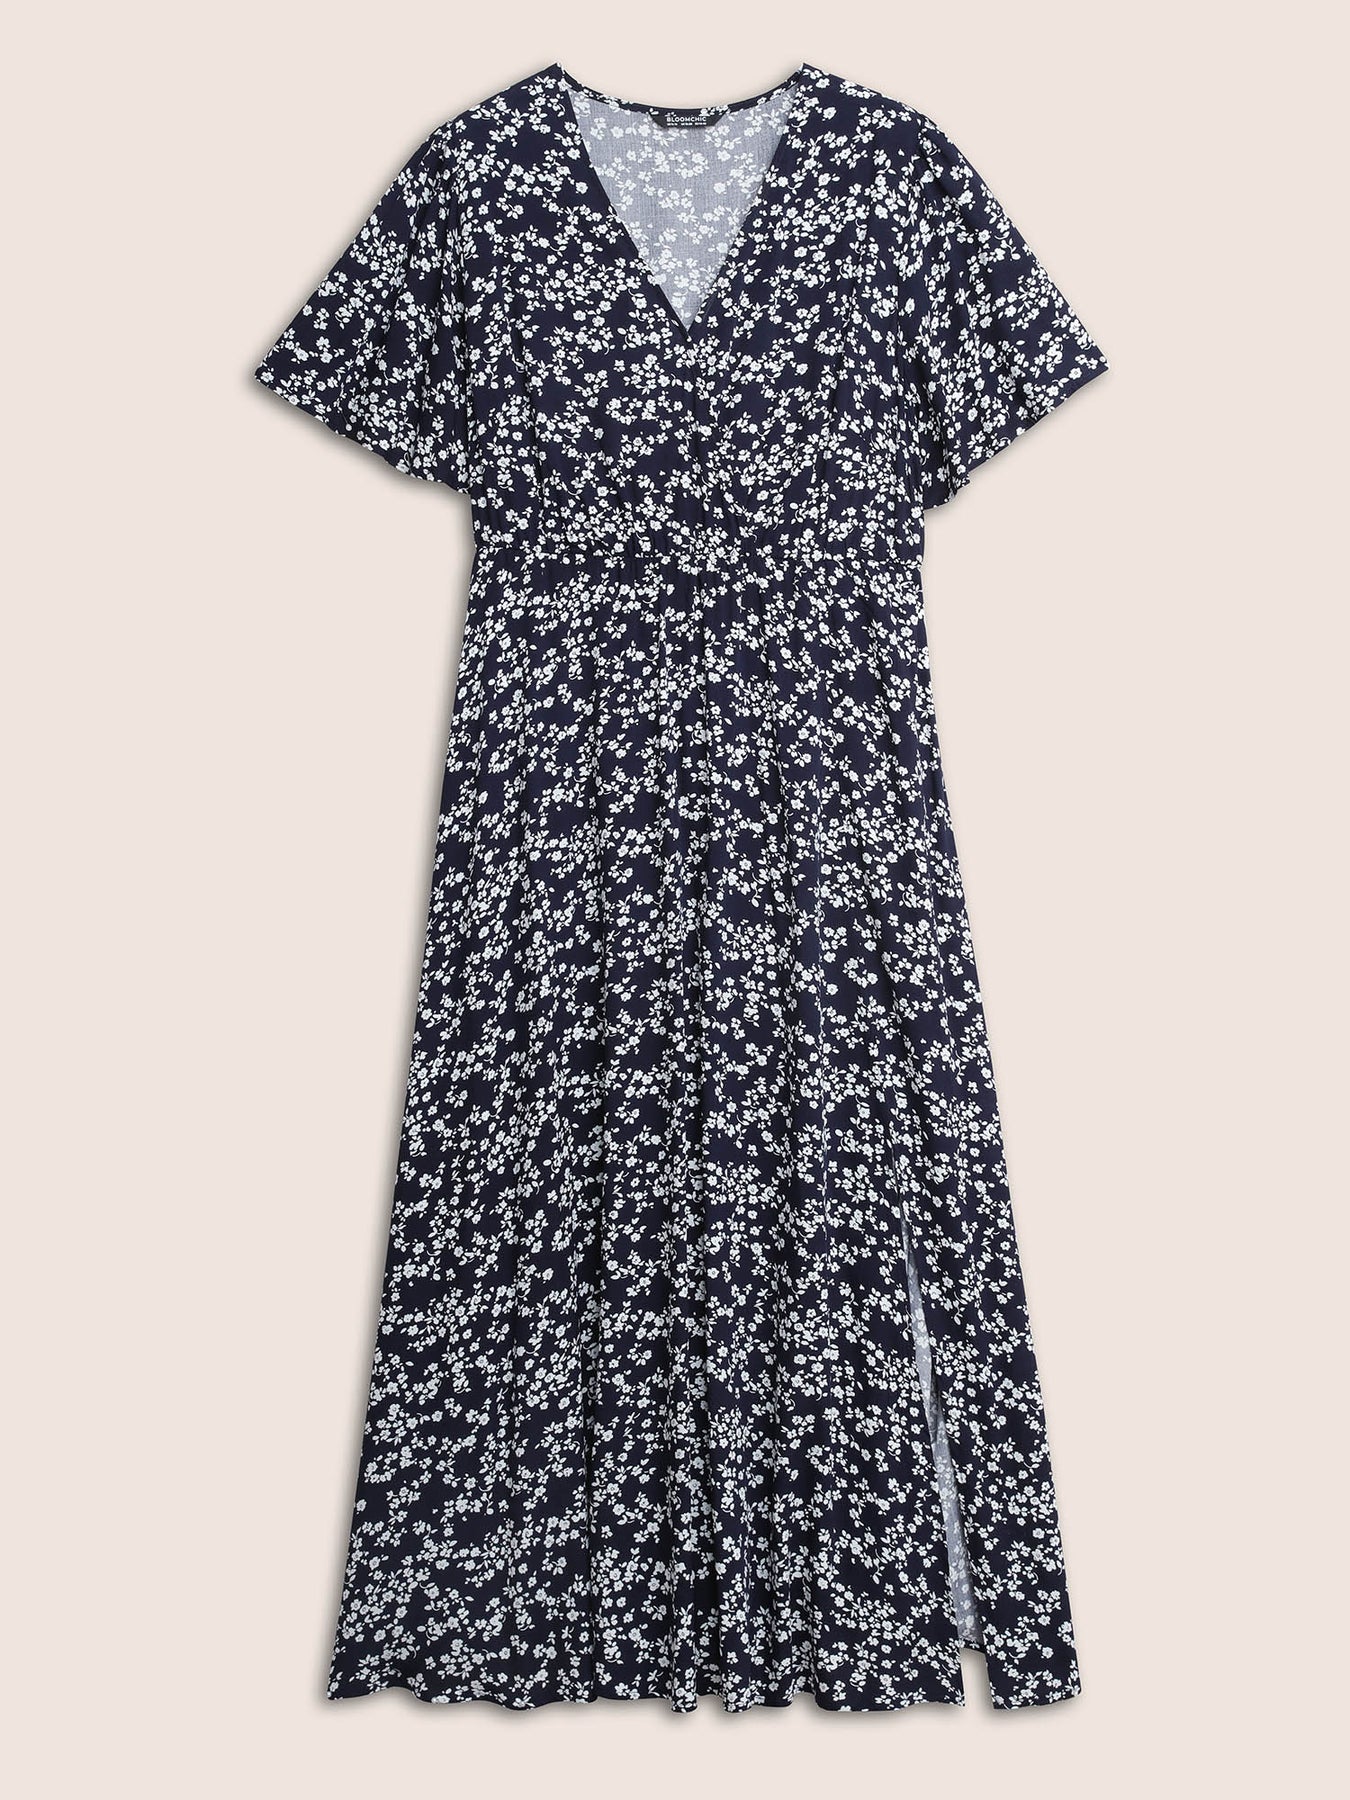 Plus Size Dresses | Bloom Dress - Flutter Sleeve Ditsy Floral Pocket ...